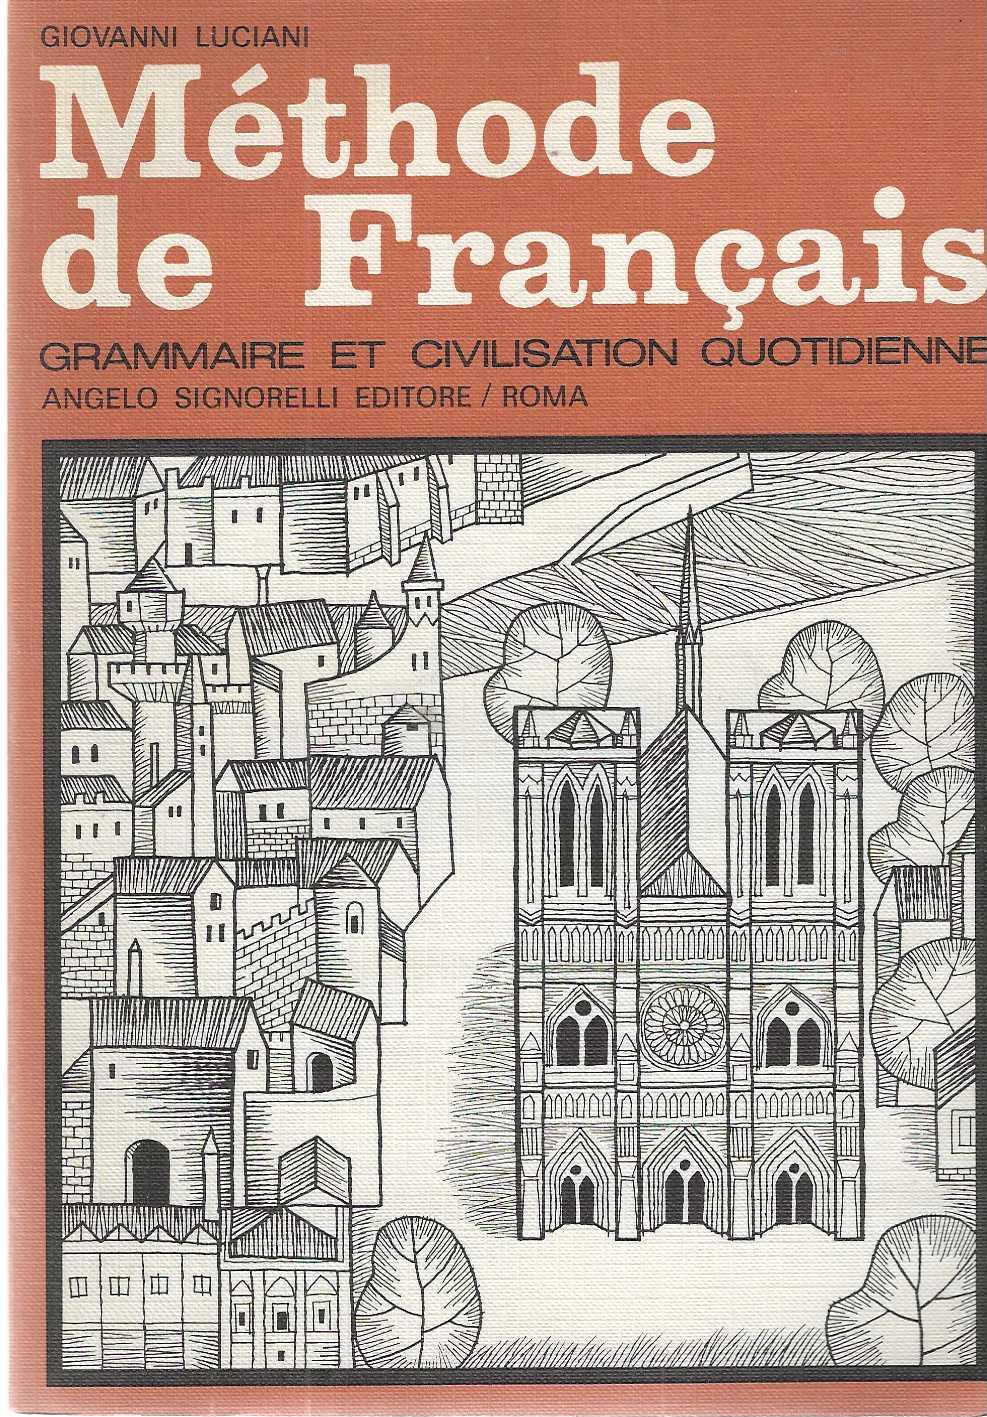 "Methode de Francais" "Grammaire et civilisation quotidienne"